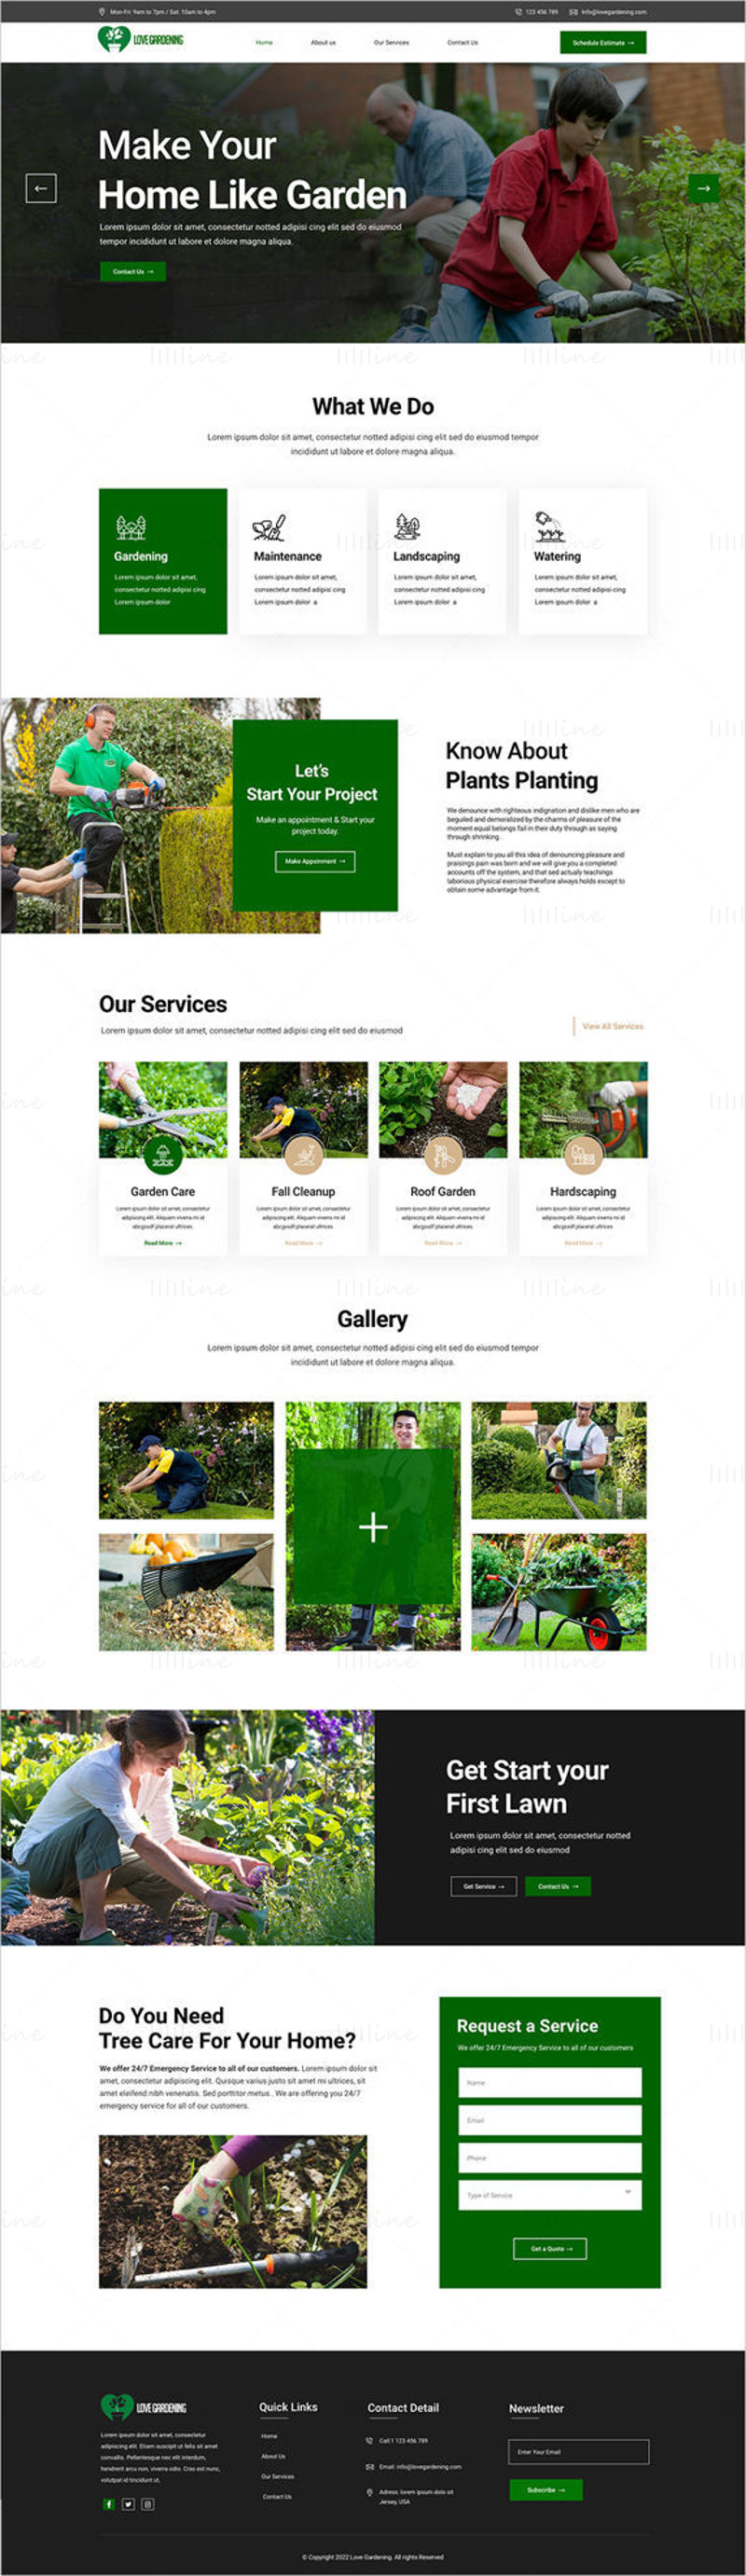 Шаблон одредишне странице веб странице компаније Лове Гарденинг – кориснички интерфејс Адобе КСД